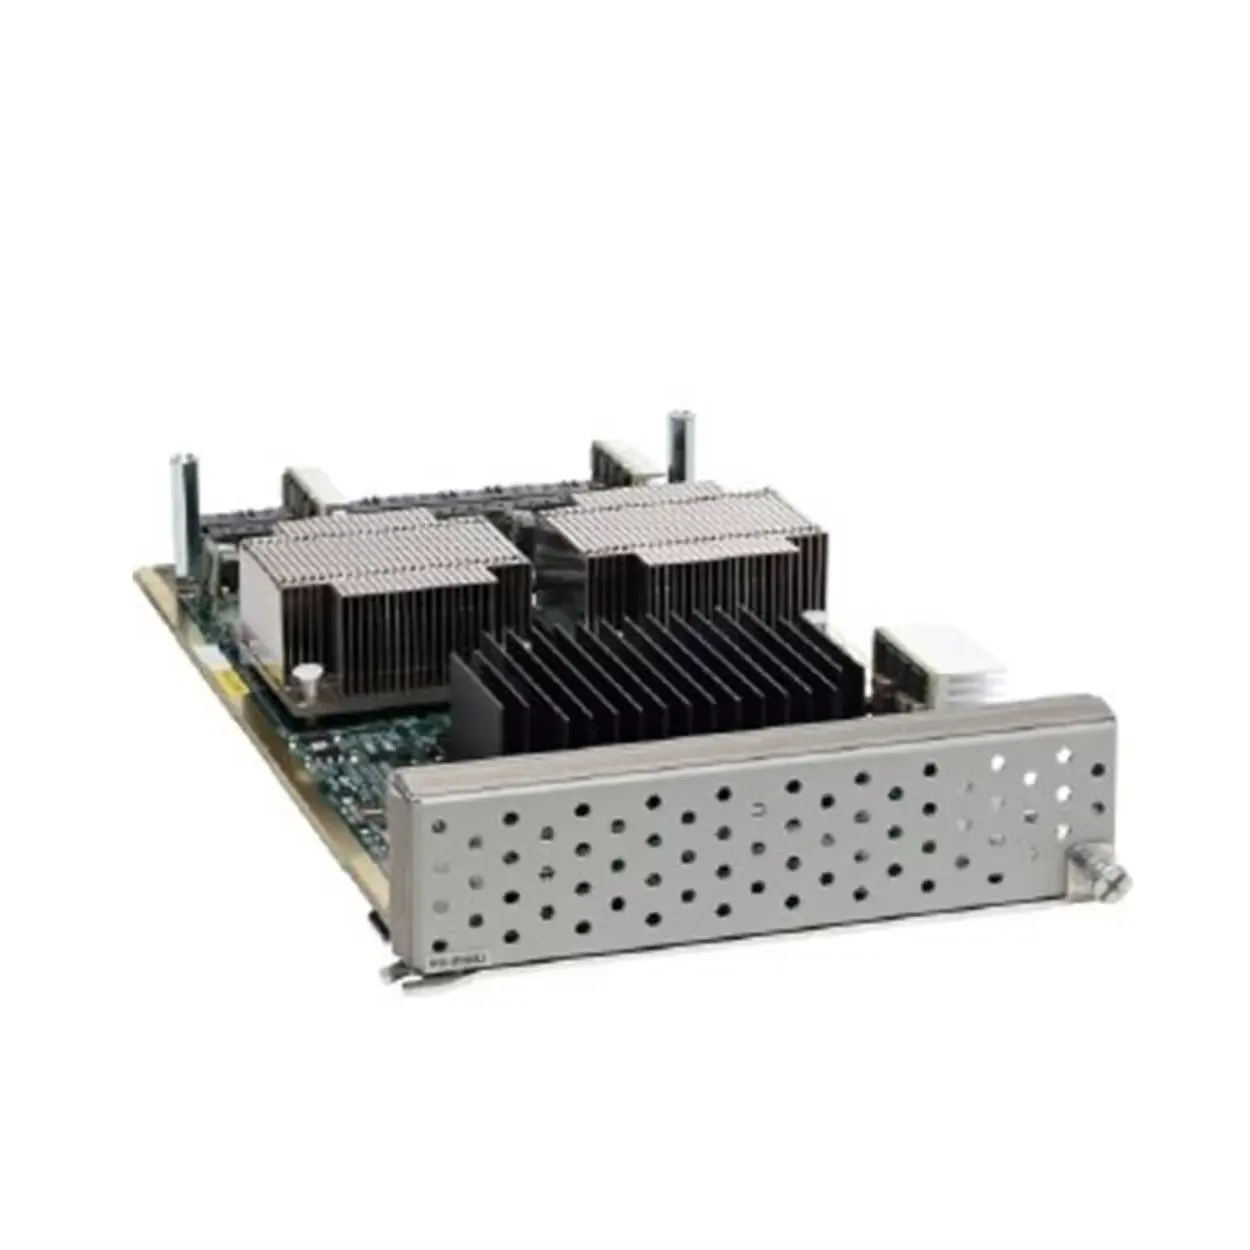 Cisco Nexus 5000 Switch Module Layer 3 modul ekspansi, versi 2 N55-M160L3-V2 cadangan =